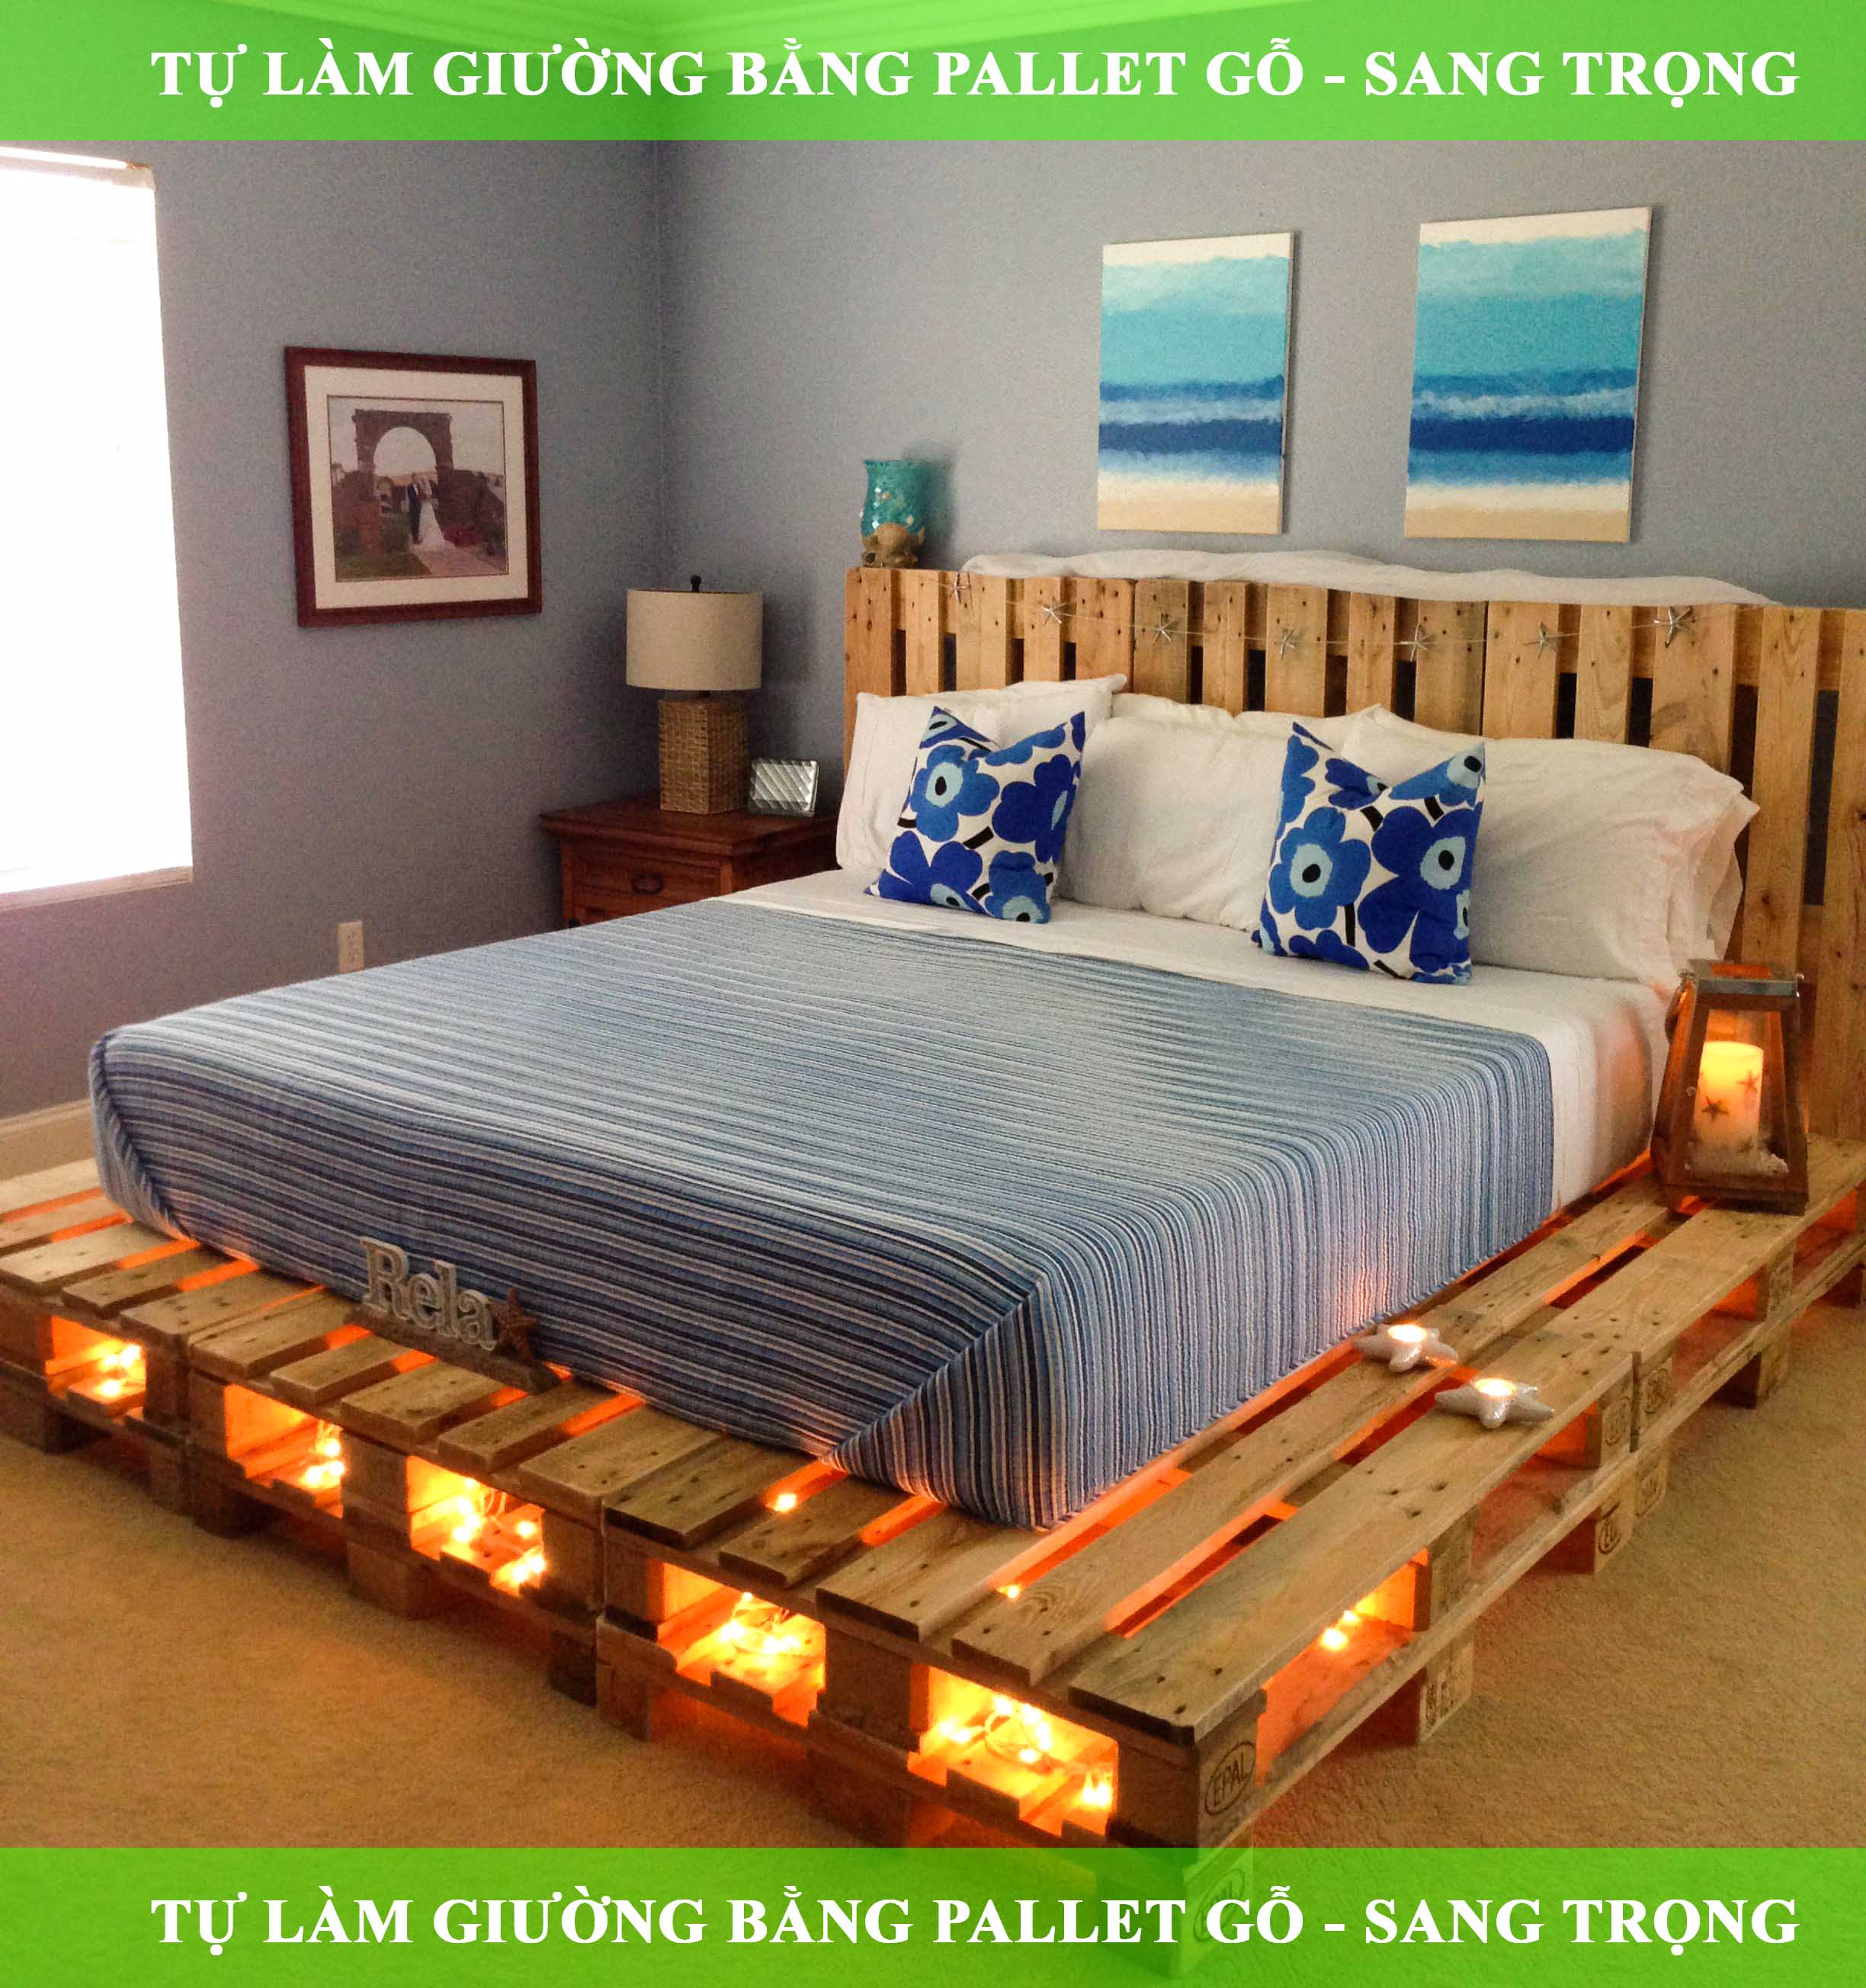 Hướng dẫn hoàn chỉnh cách dùng pallet gỗ làm giường ngủ